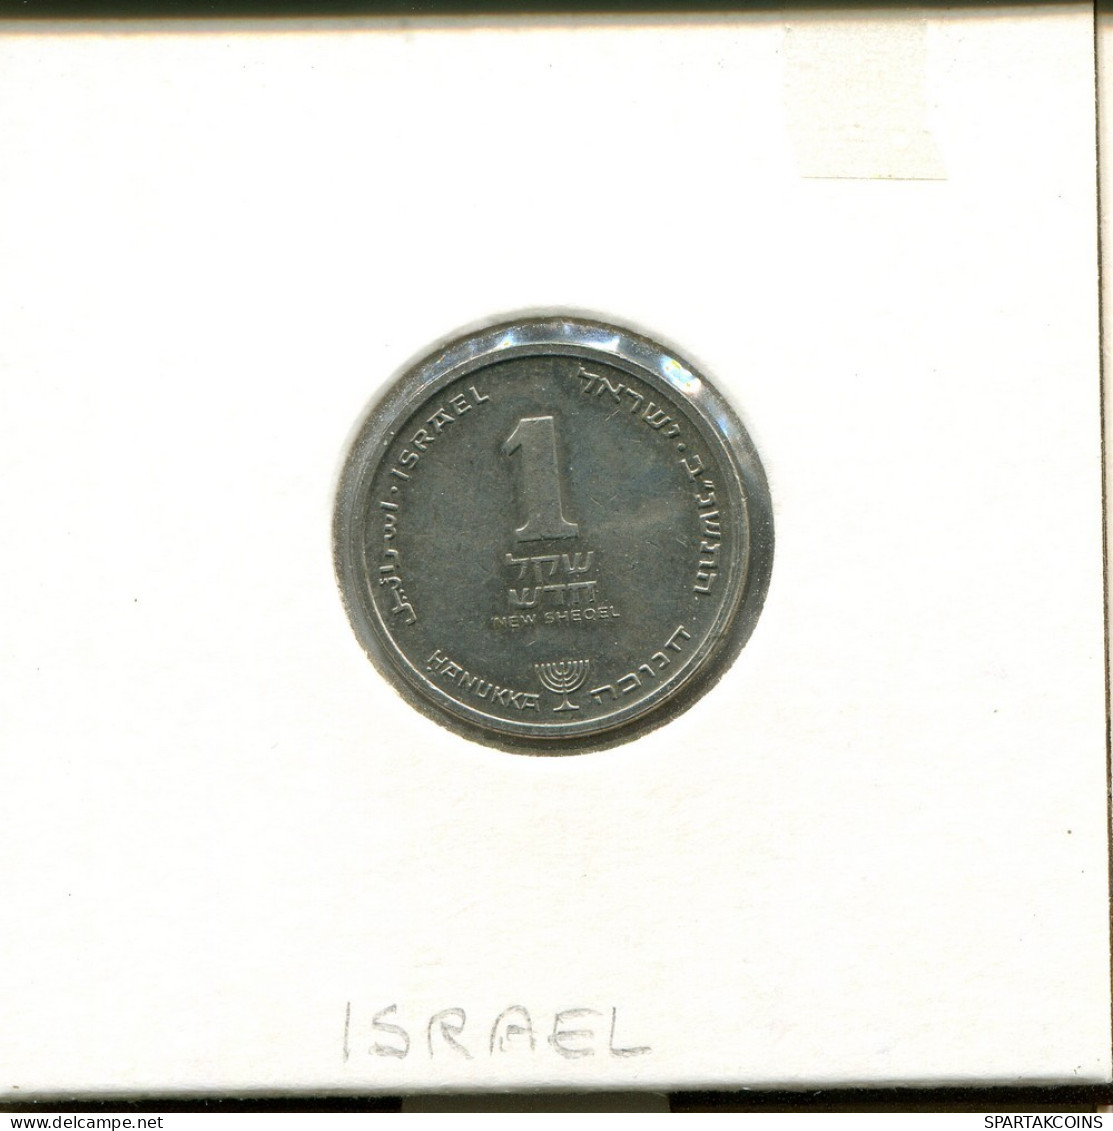 1 NEW SHEQEL 1992 ISRAEL Münze #AS037.D.A - Israël